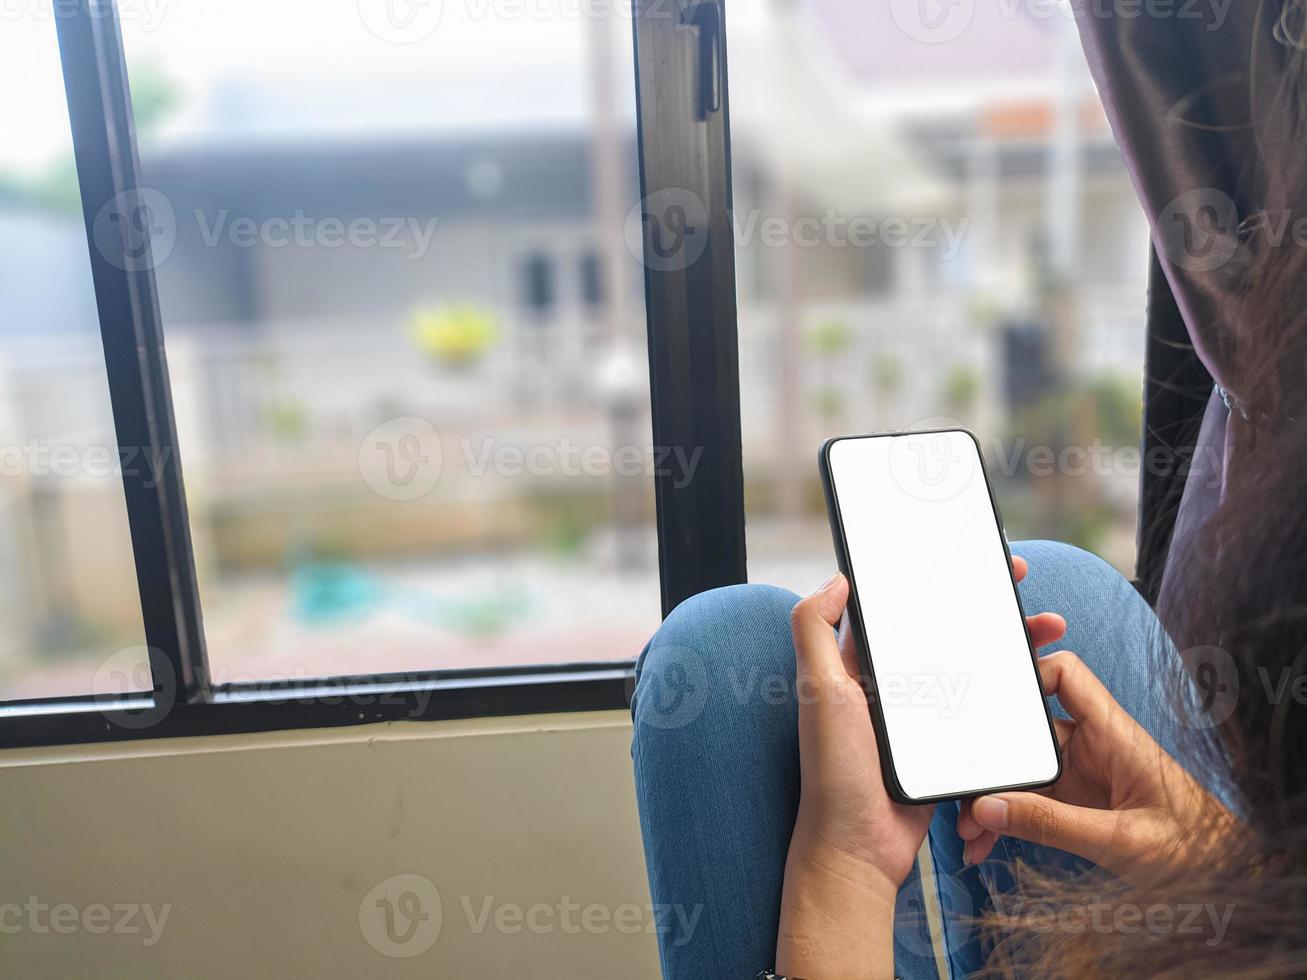 gros plan d'une main de femme tenant un écran blanc de smartphone est vierge .maquette. photo